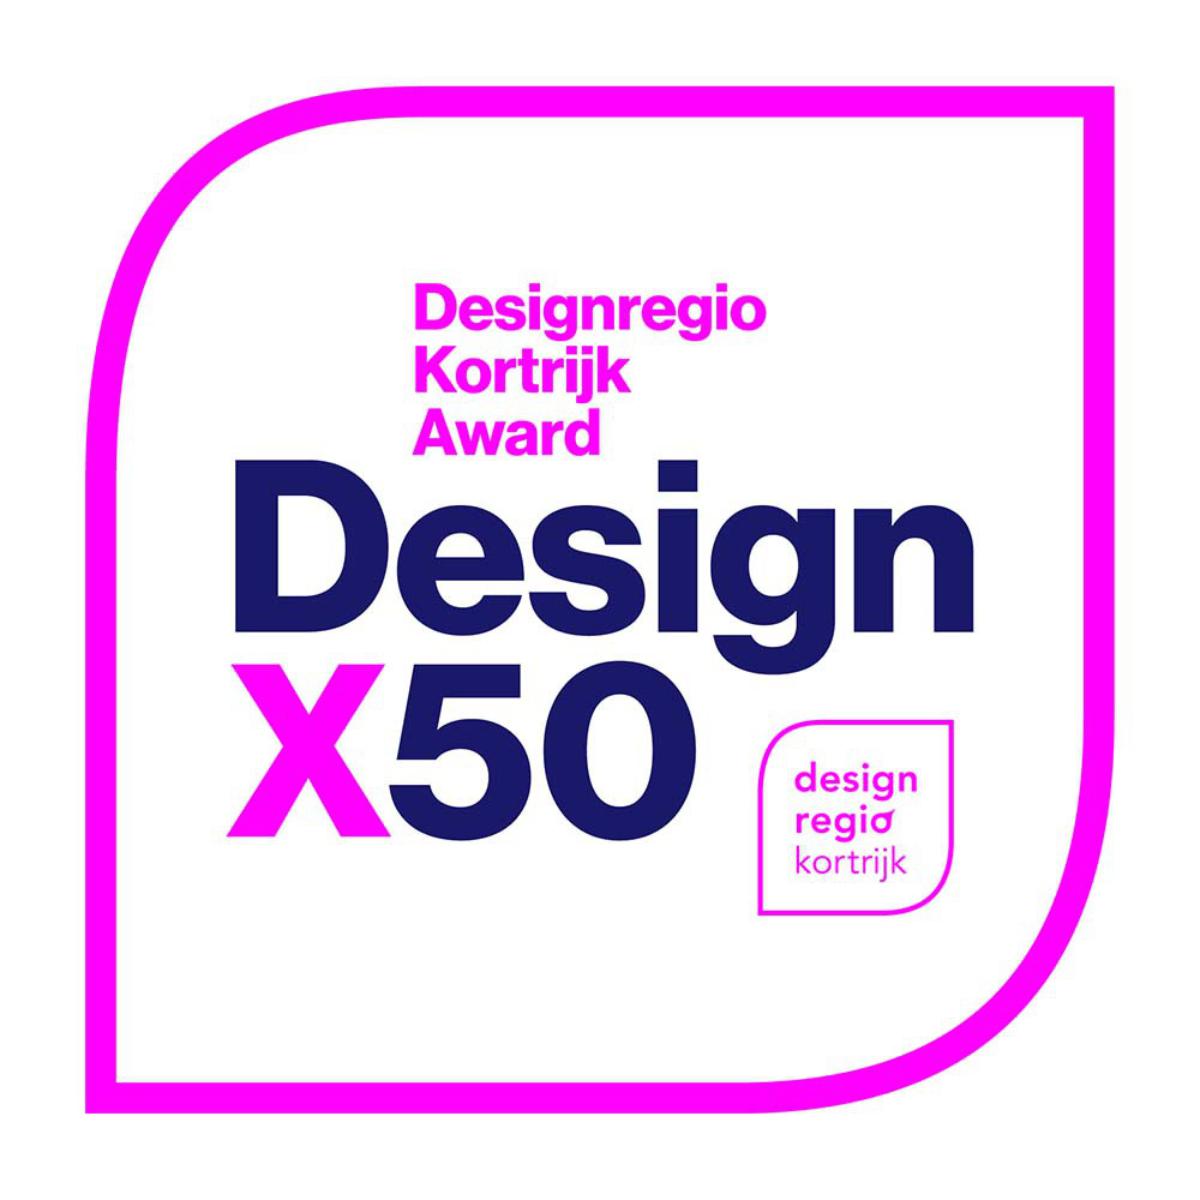 Design-regio-award